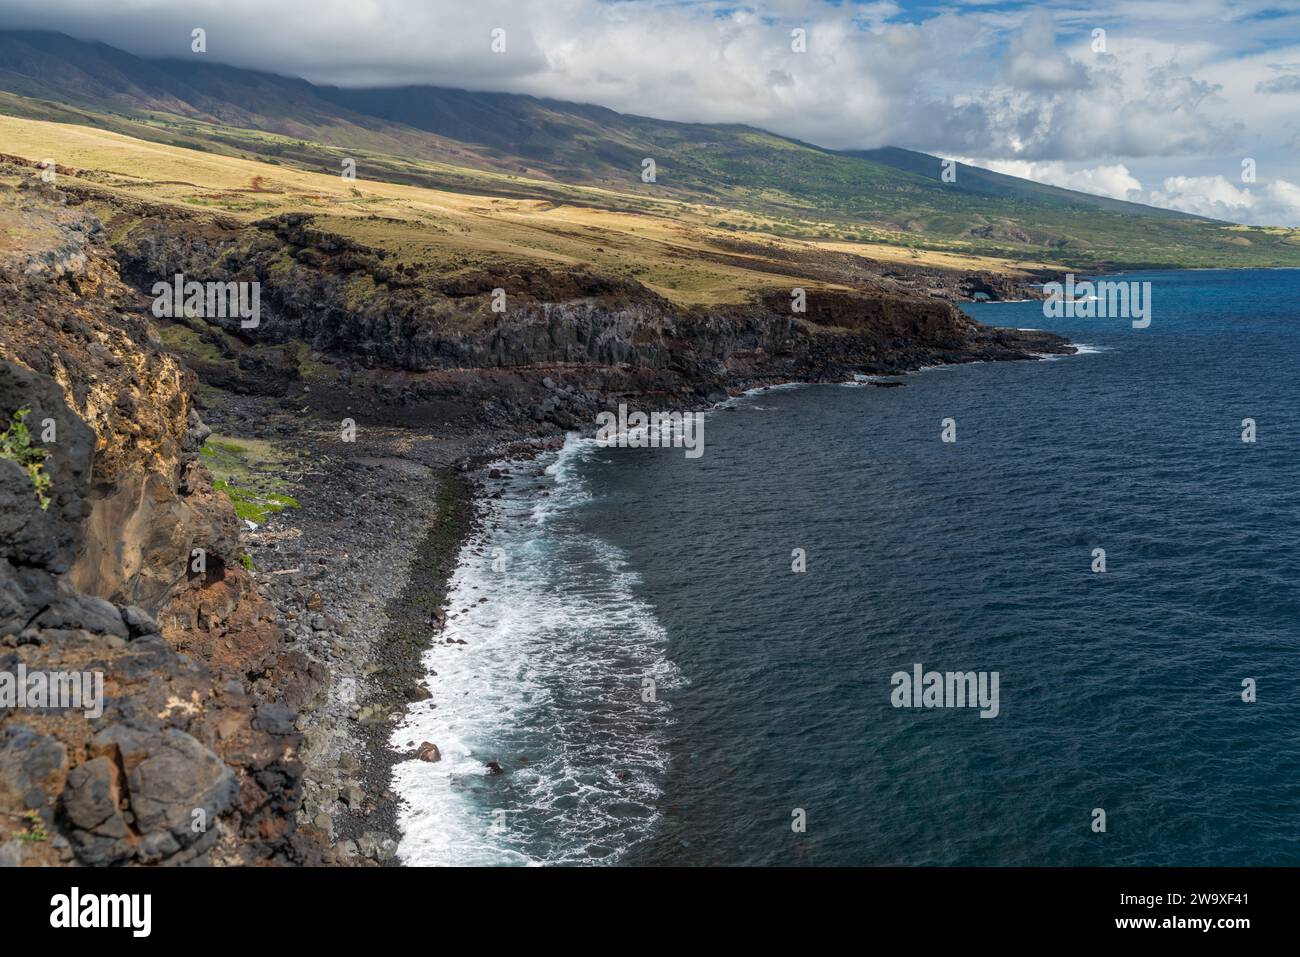 Le scogliere di lava torreggiano sulle acque blu profonde di Maui, mostrando il dinamico paesaggio vulcanico dell'isola. Foto Stock